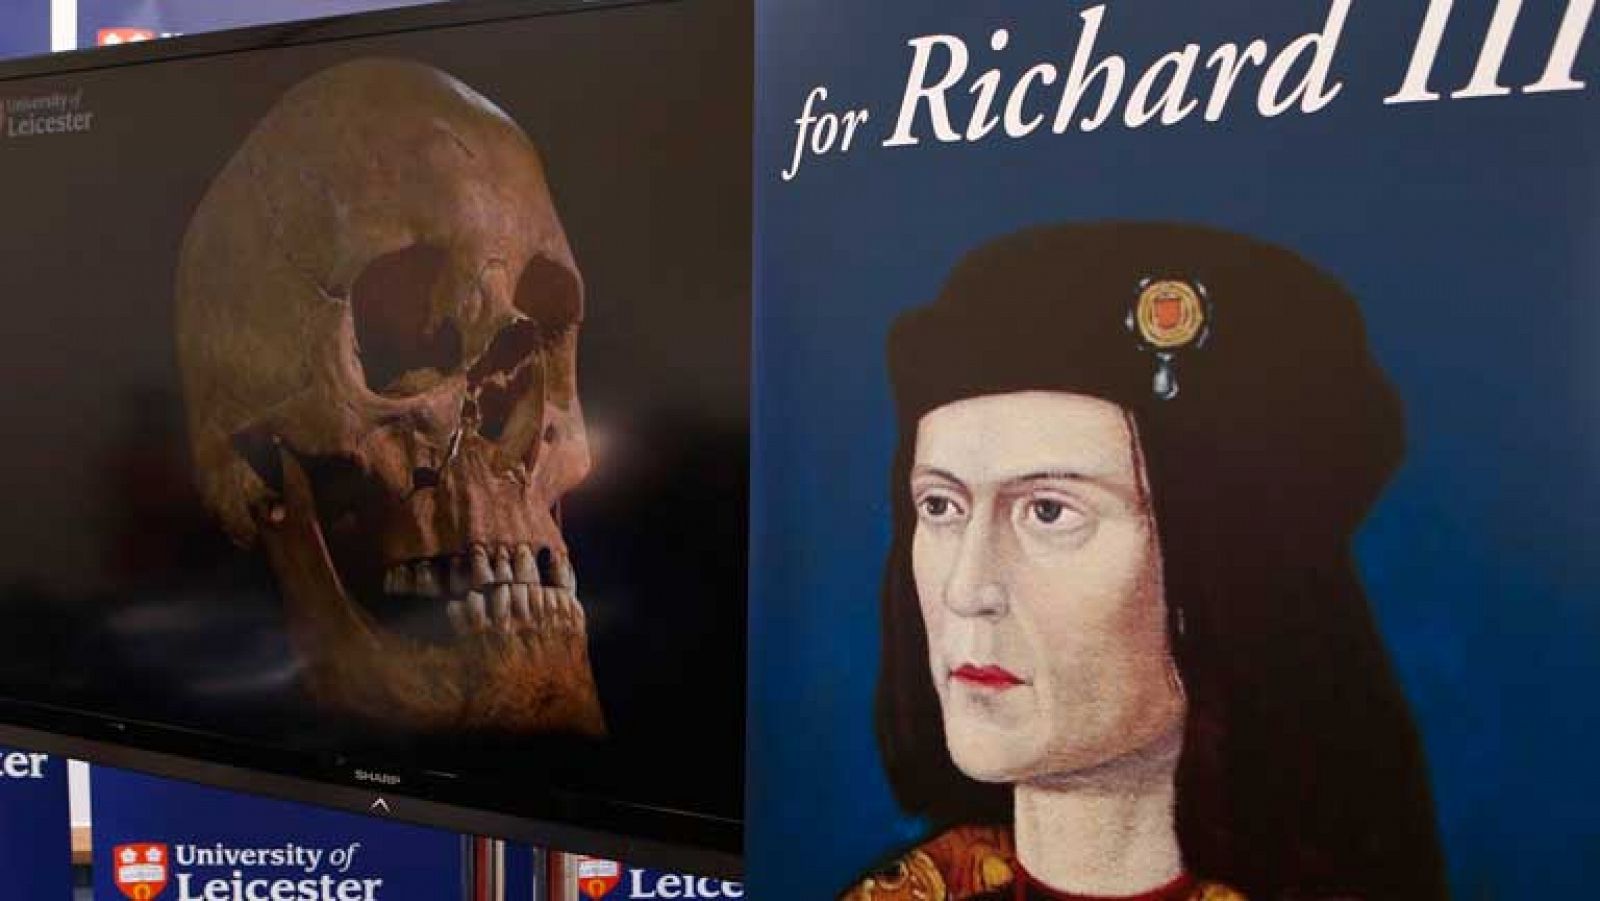 Las pruebas del ADN confirman que los restos hallados en Leicester eran de Ricardo III